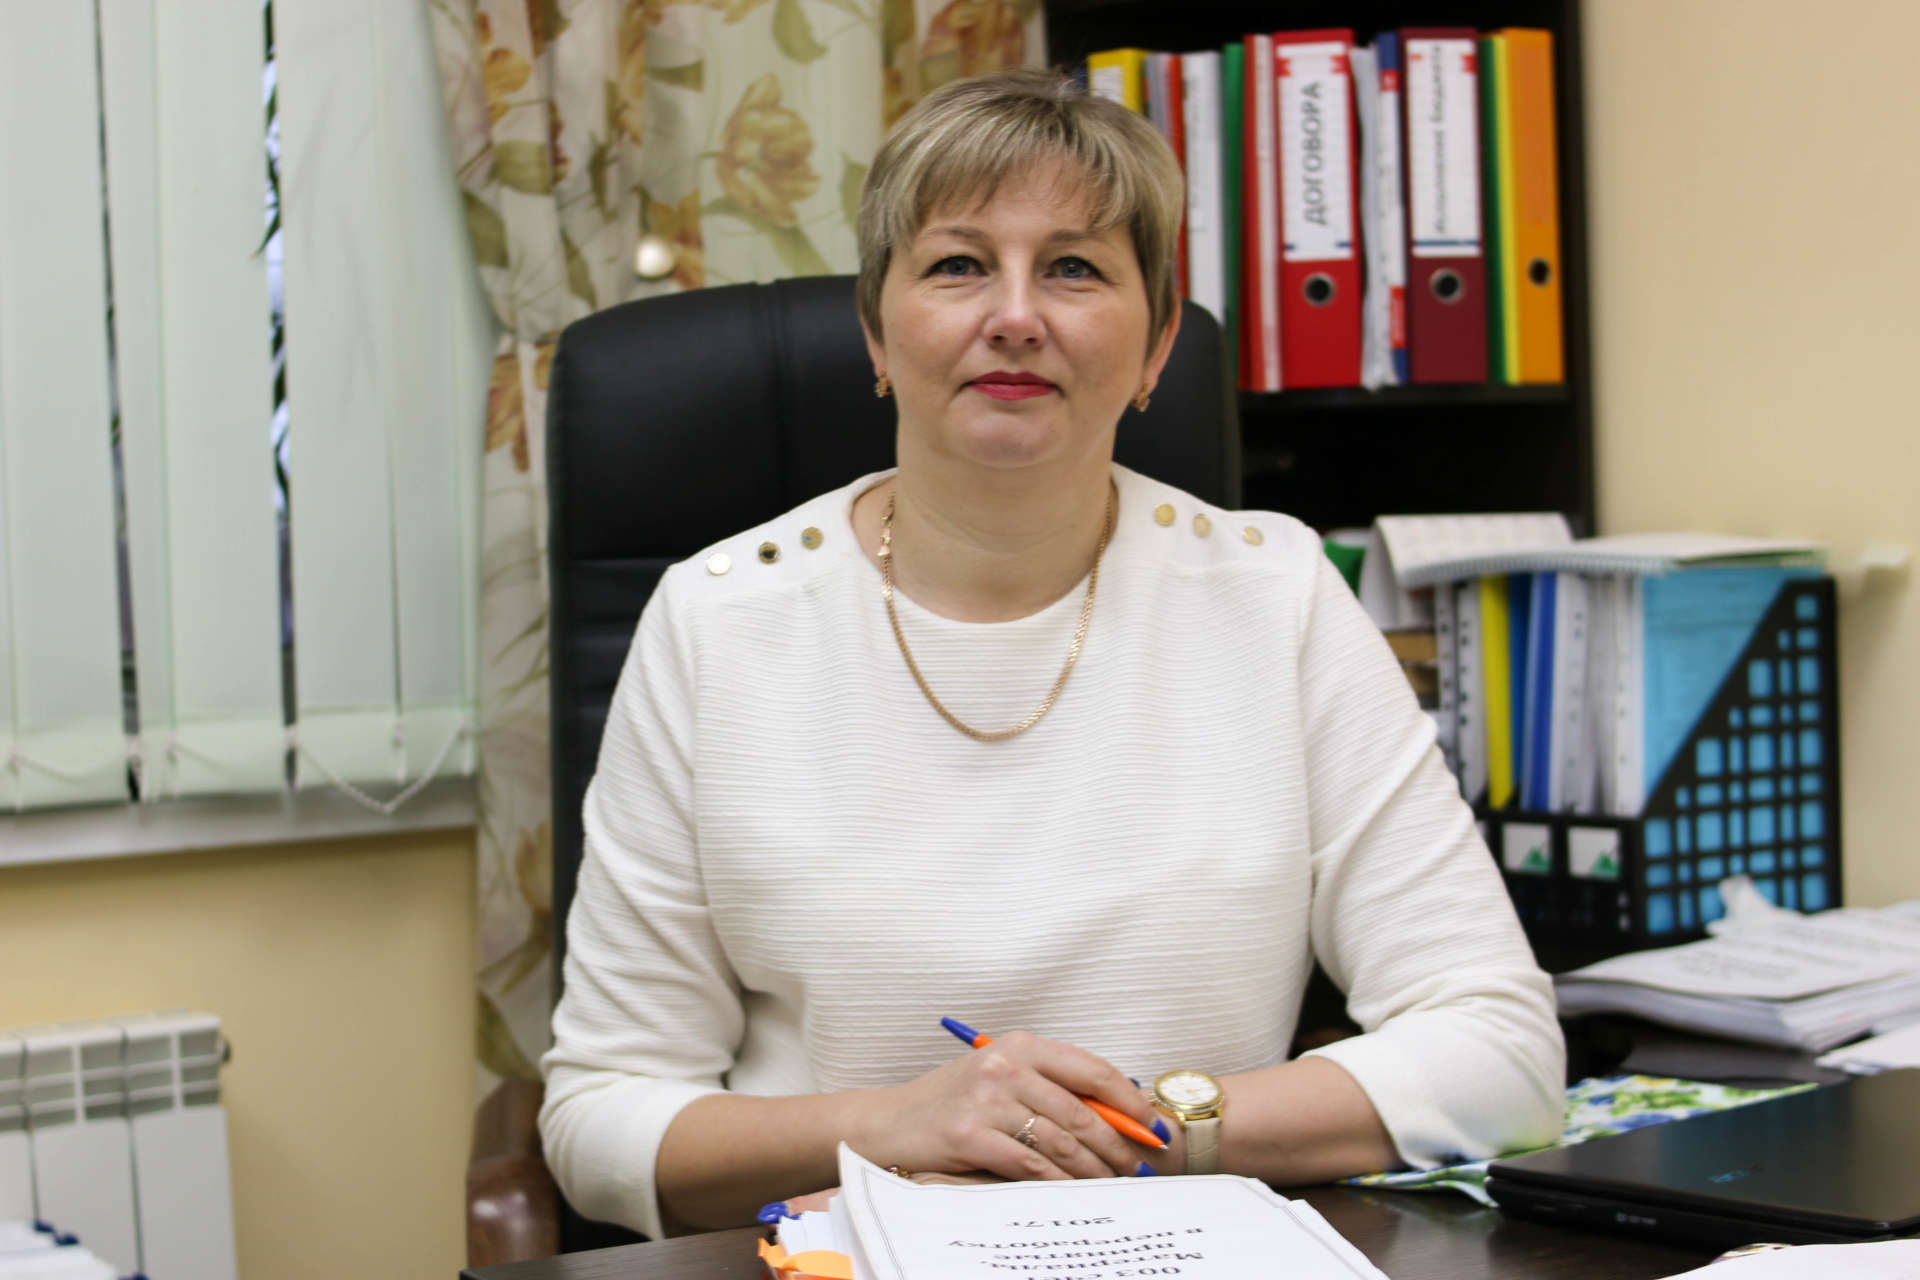 24 ноября свой день рождения празднует начальник отдела внутреннего контроля и аудита УК «АСБ-Агро» Татьяна Юрьевна Волкова